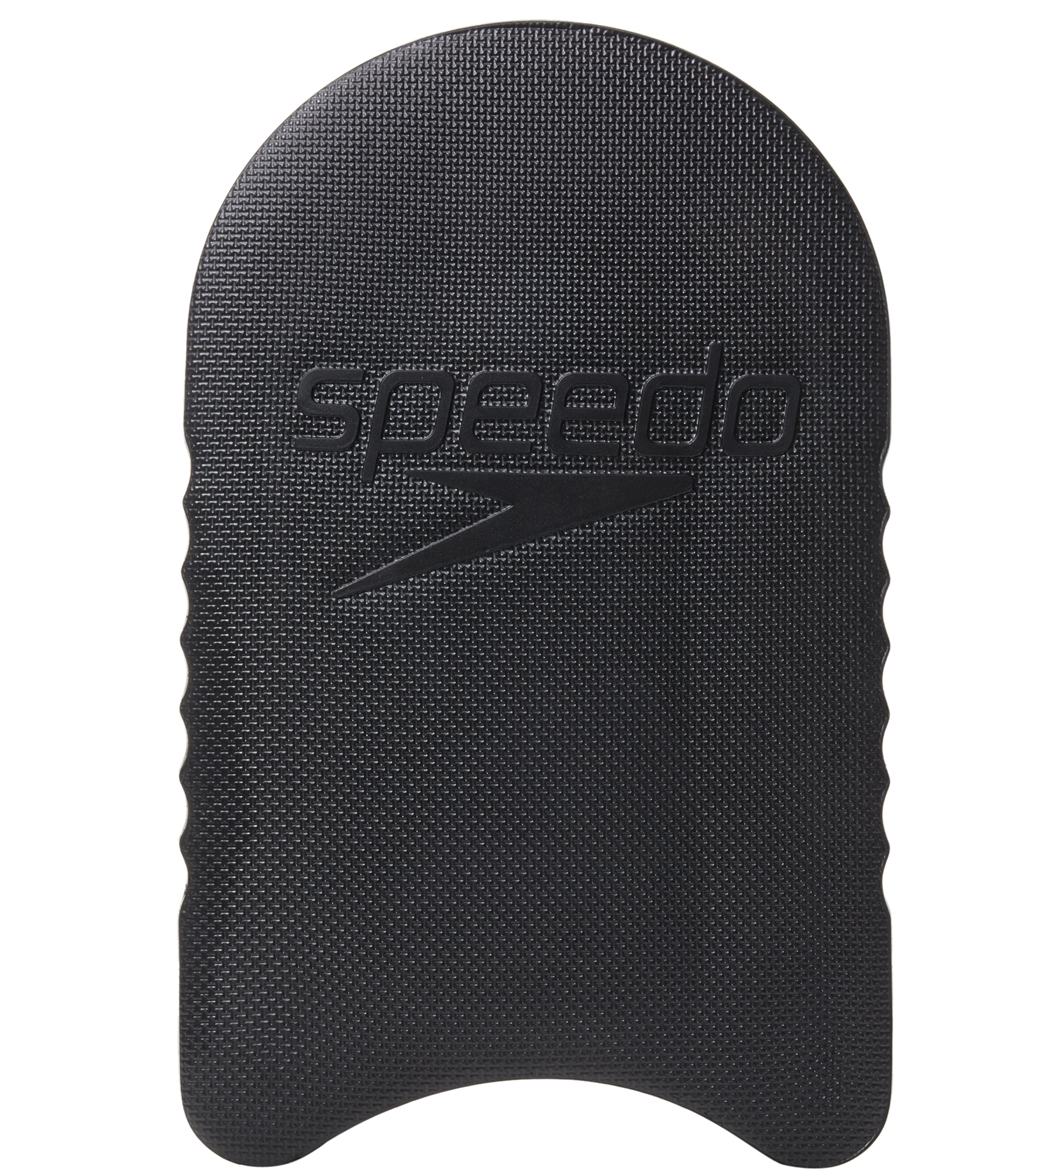 Speedo Team Kickboard at SwimOutlet.com